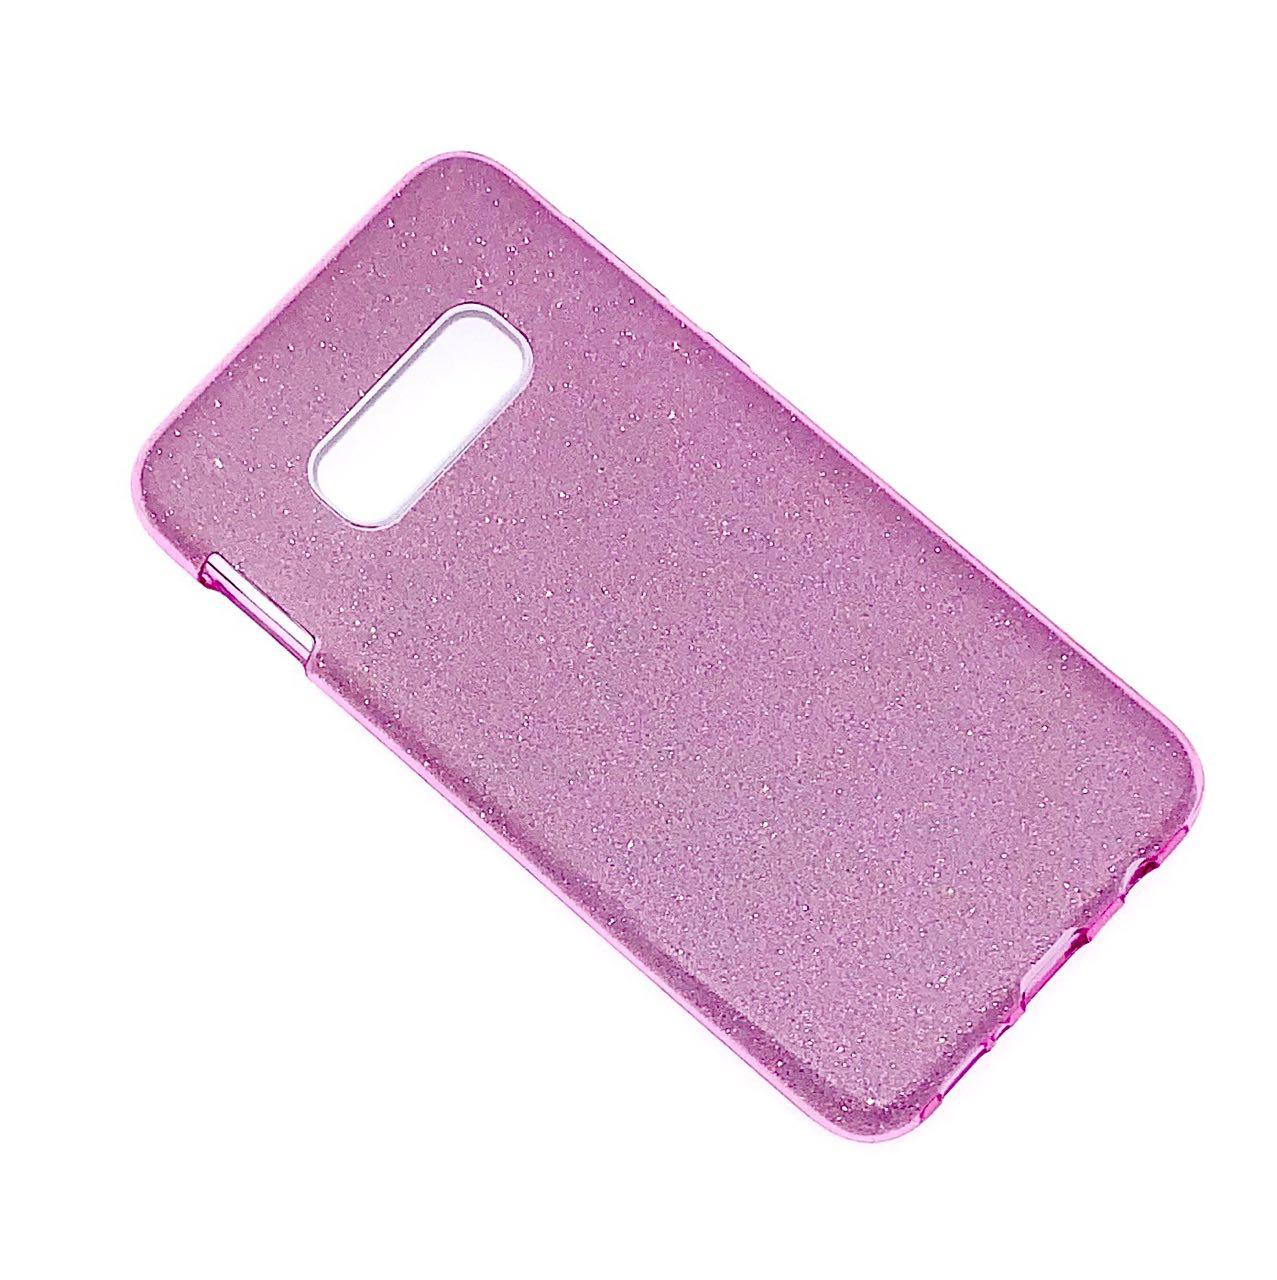 Чехол накладка Shine для SAMSUNG Galaxy S10e (SM-G970), силикон, блестки, цвет фиолетовый.